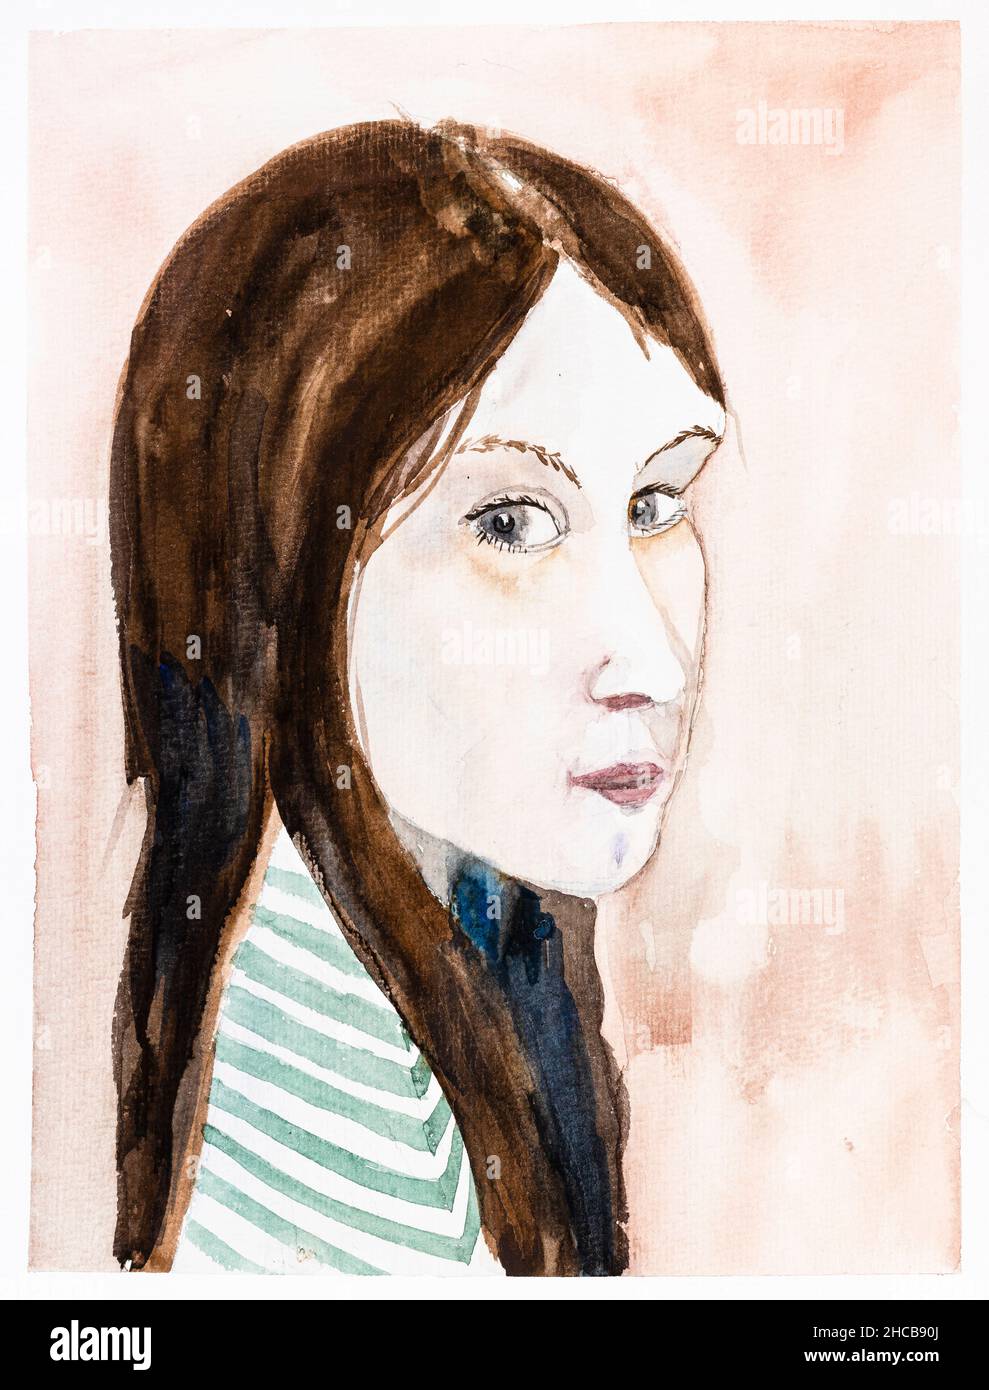 ritratto di ragazza adolescente bianca con faccia pallida e capelli lunghi e lisci marroni disegnati a mano da acquerelli su carta bianca testurizzata Foto Stock